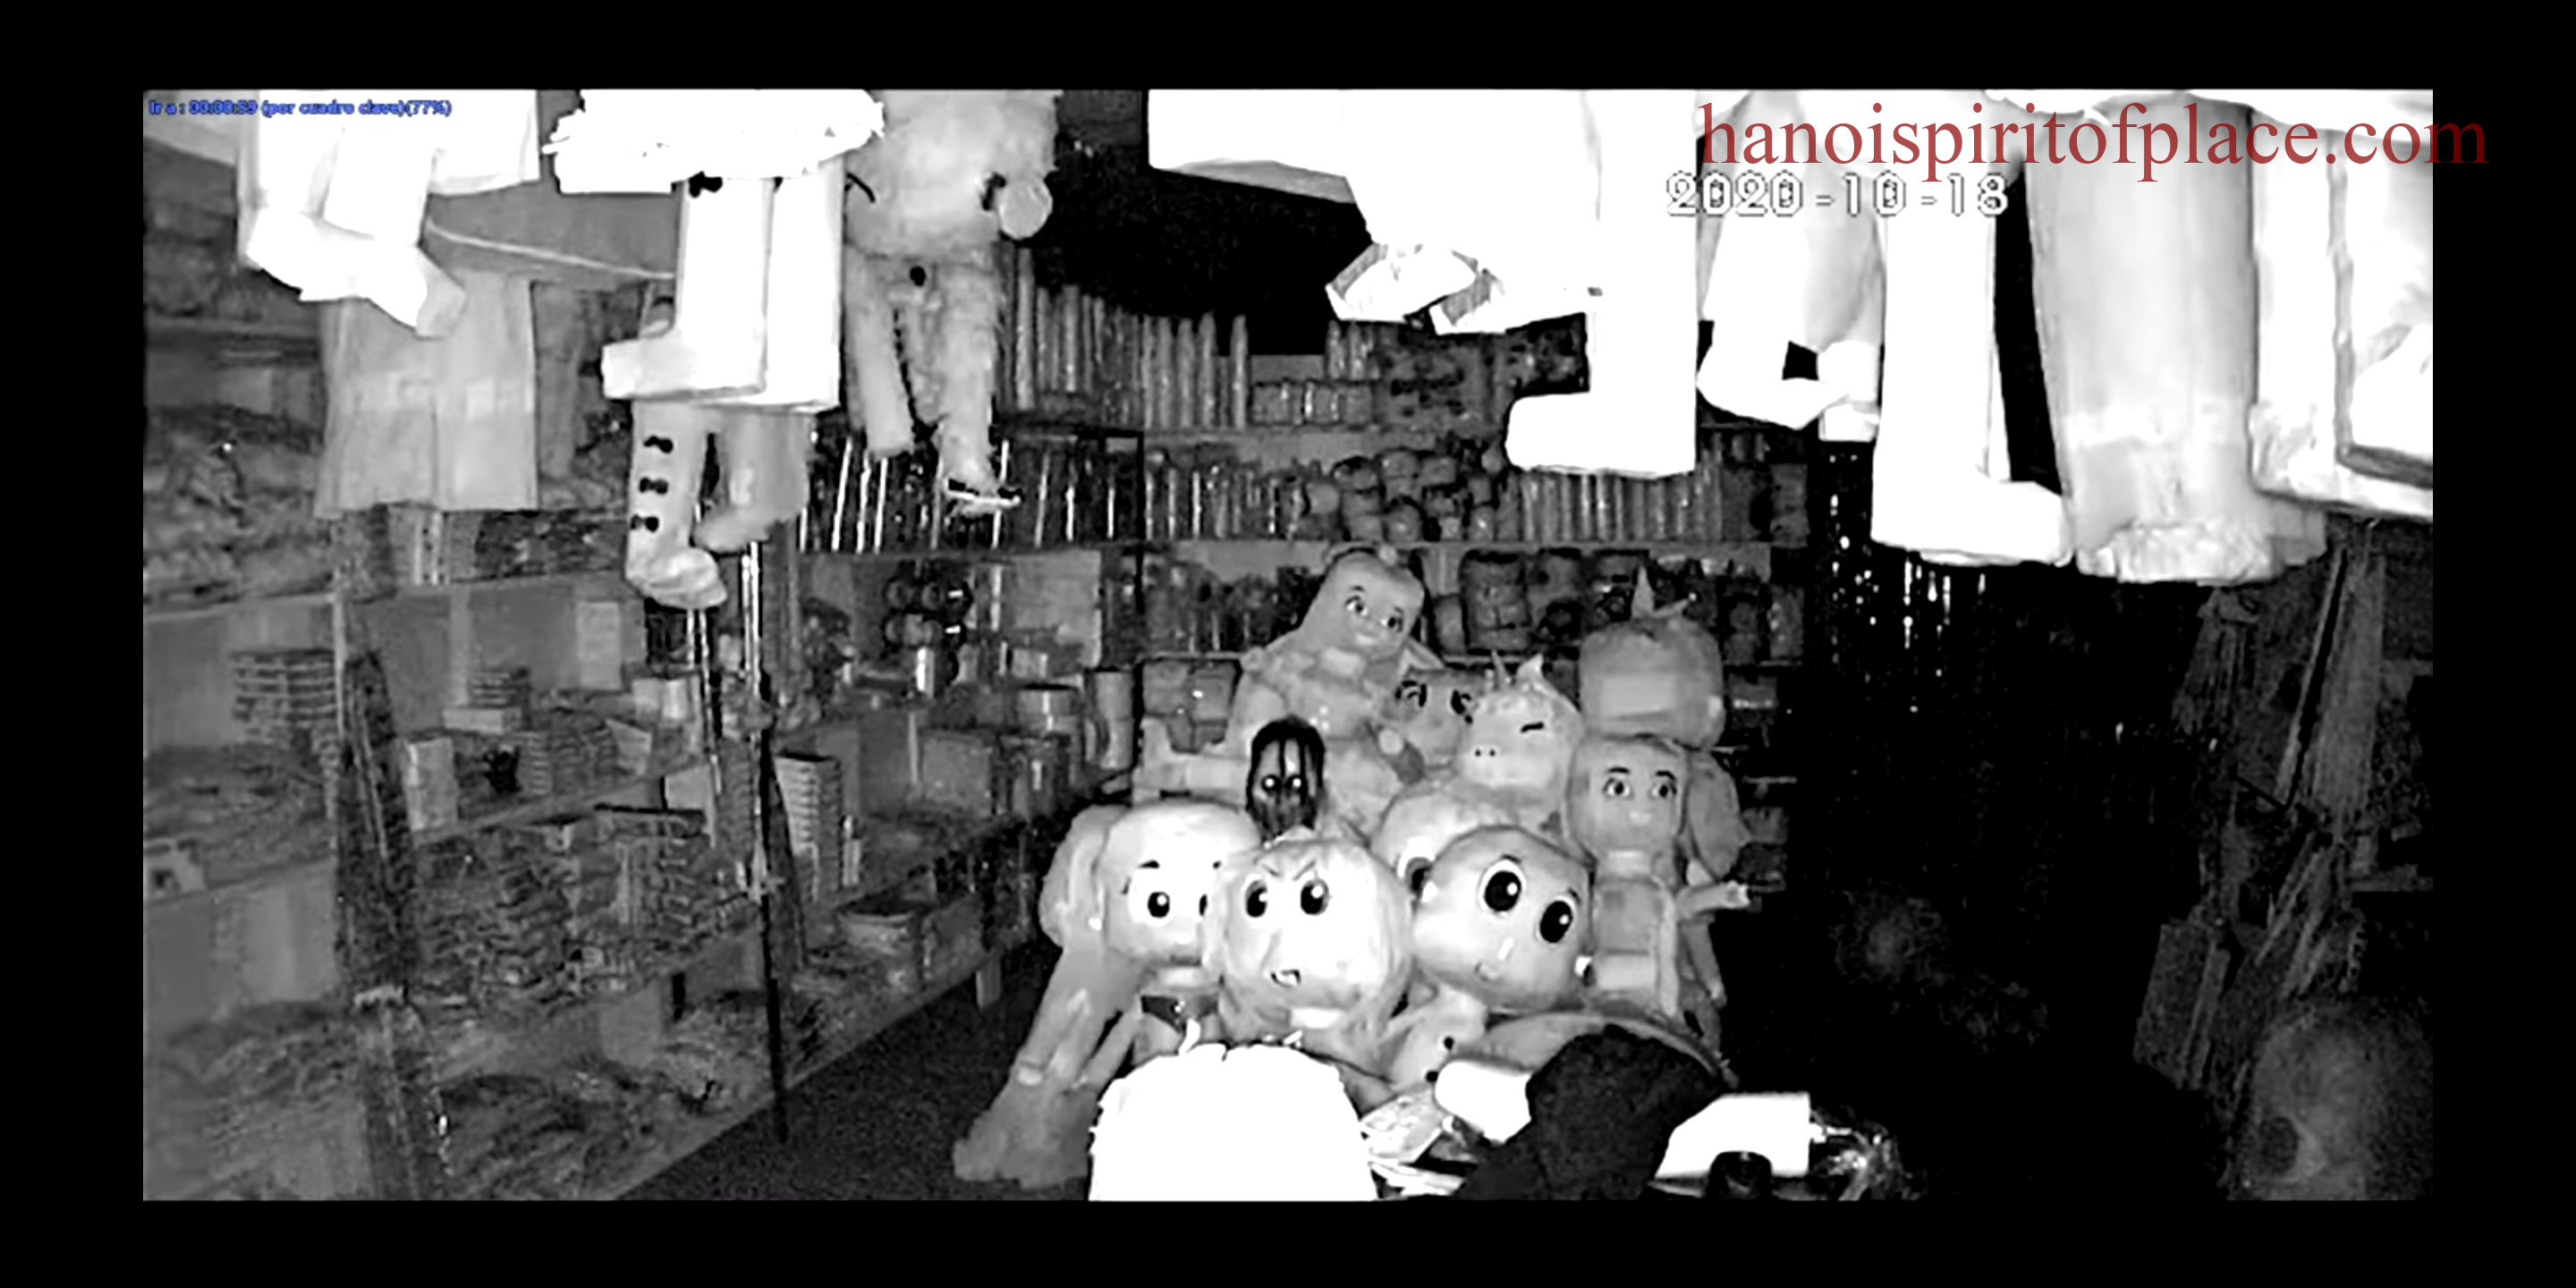 Explore the Mario Store haunted piñatas in Mexican